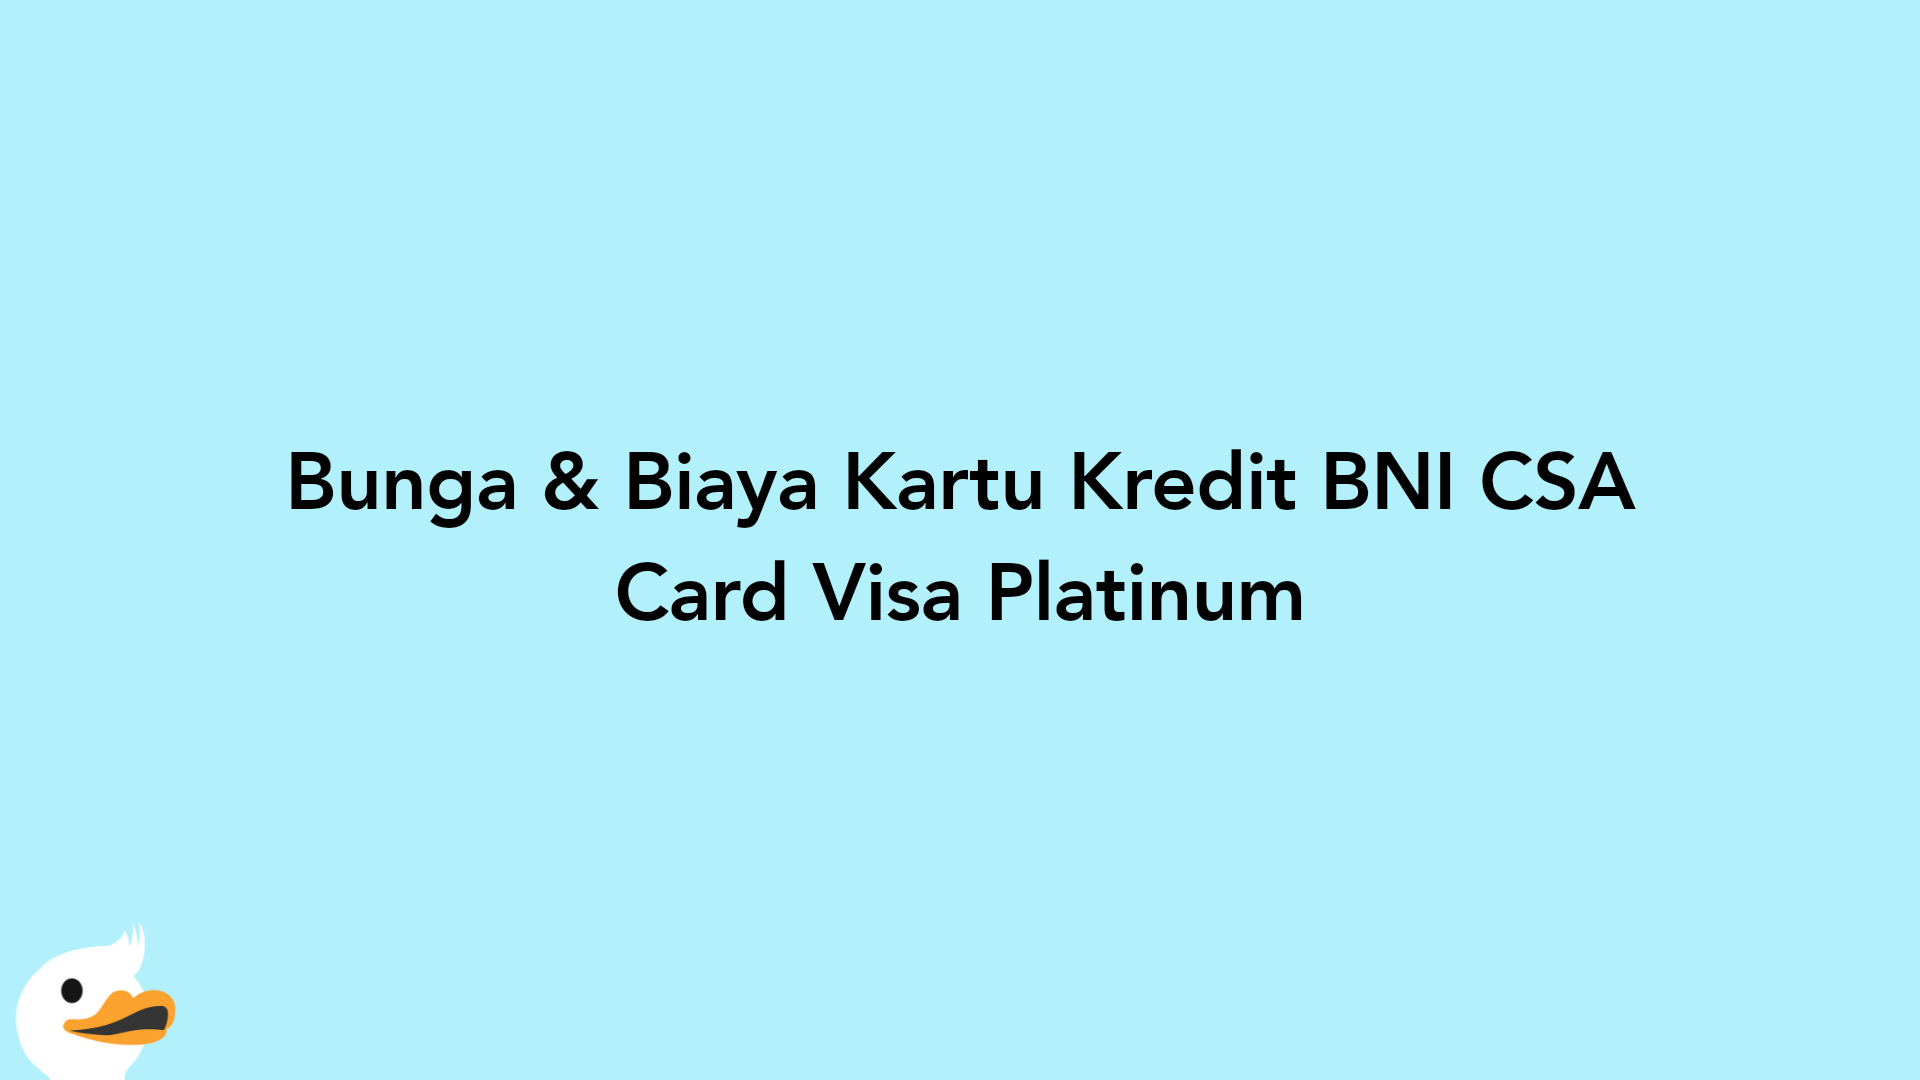 Bunga & Biaya Kartu Kredit BNI CSA Card Visa Platinum